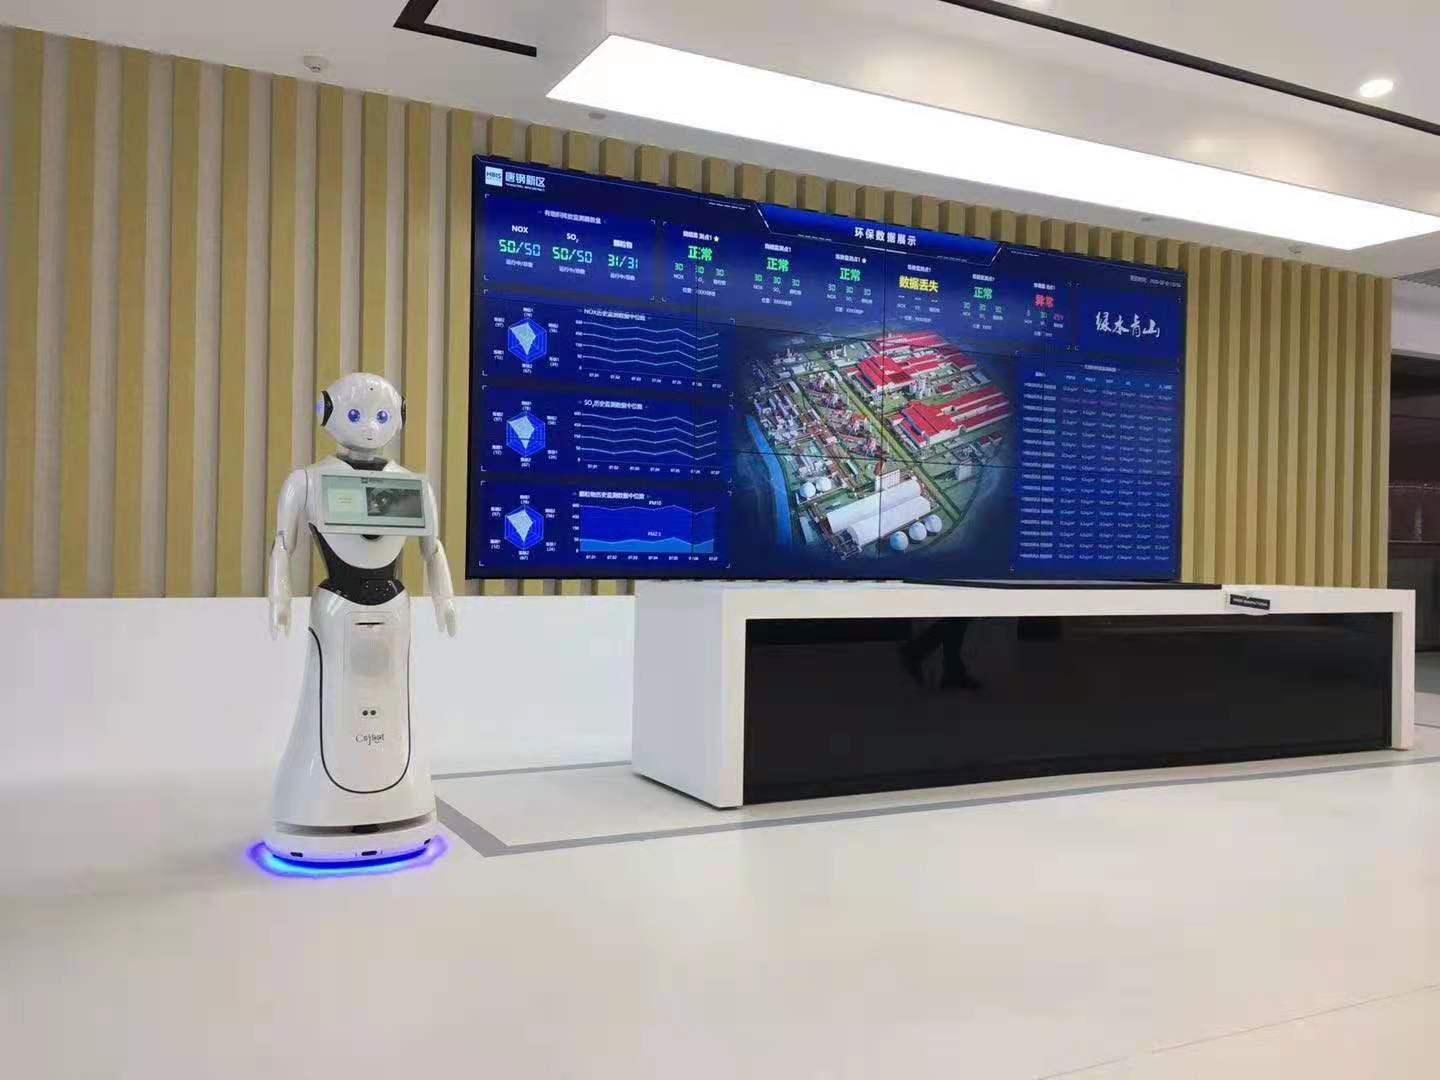 锦州智能讲解机器人接待服务